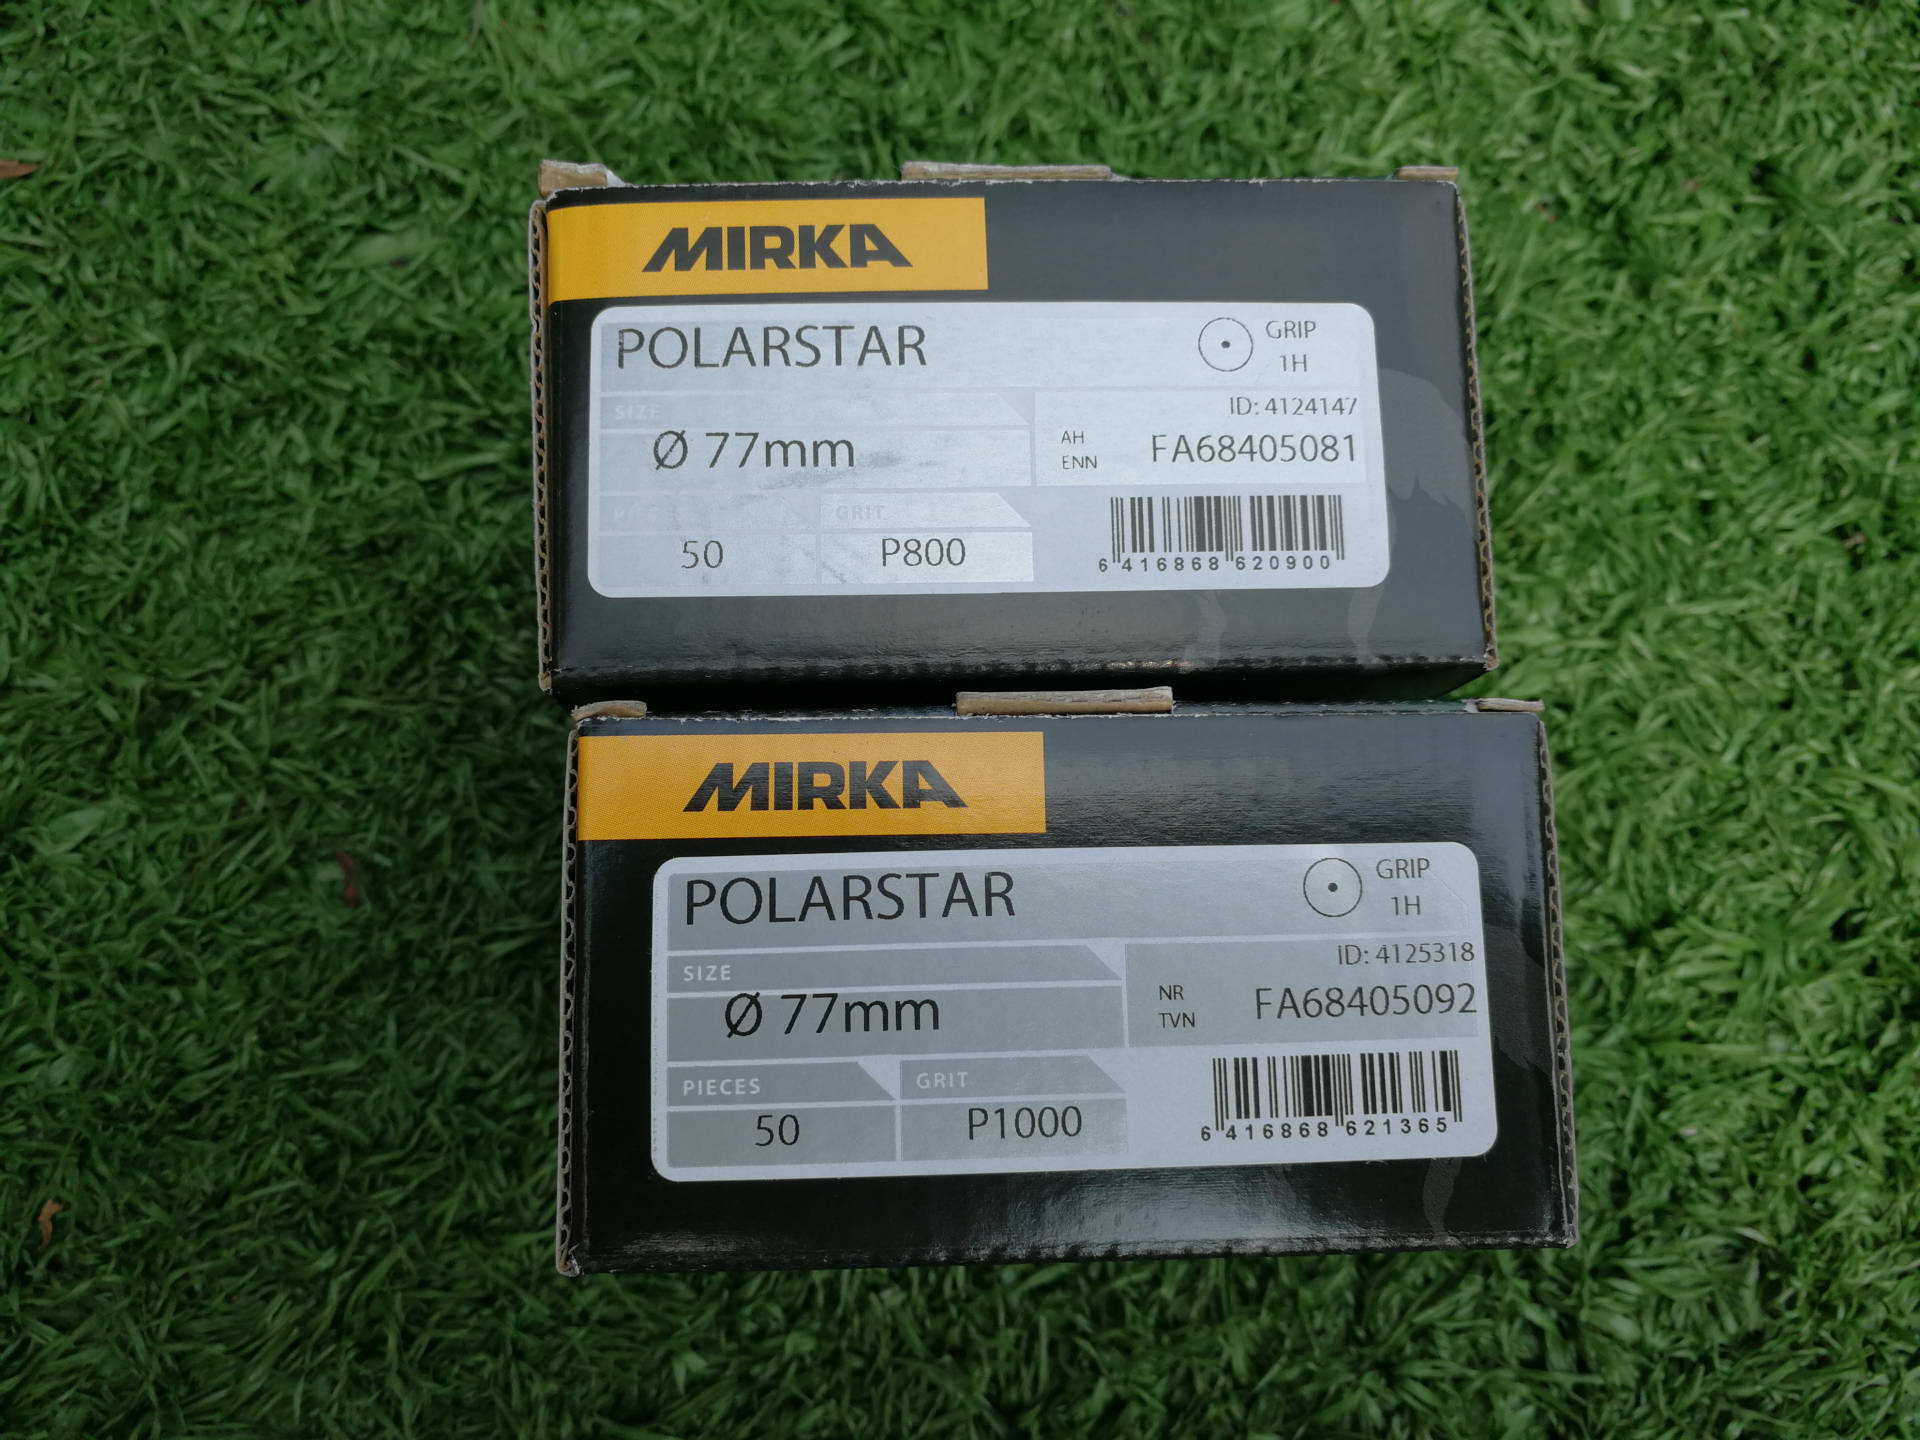 汽车涂装中涂打磨利器- 磨卡 Mirka Polarstar 薄膜背绒砂纸 P800示例图1